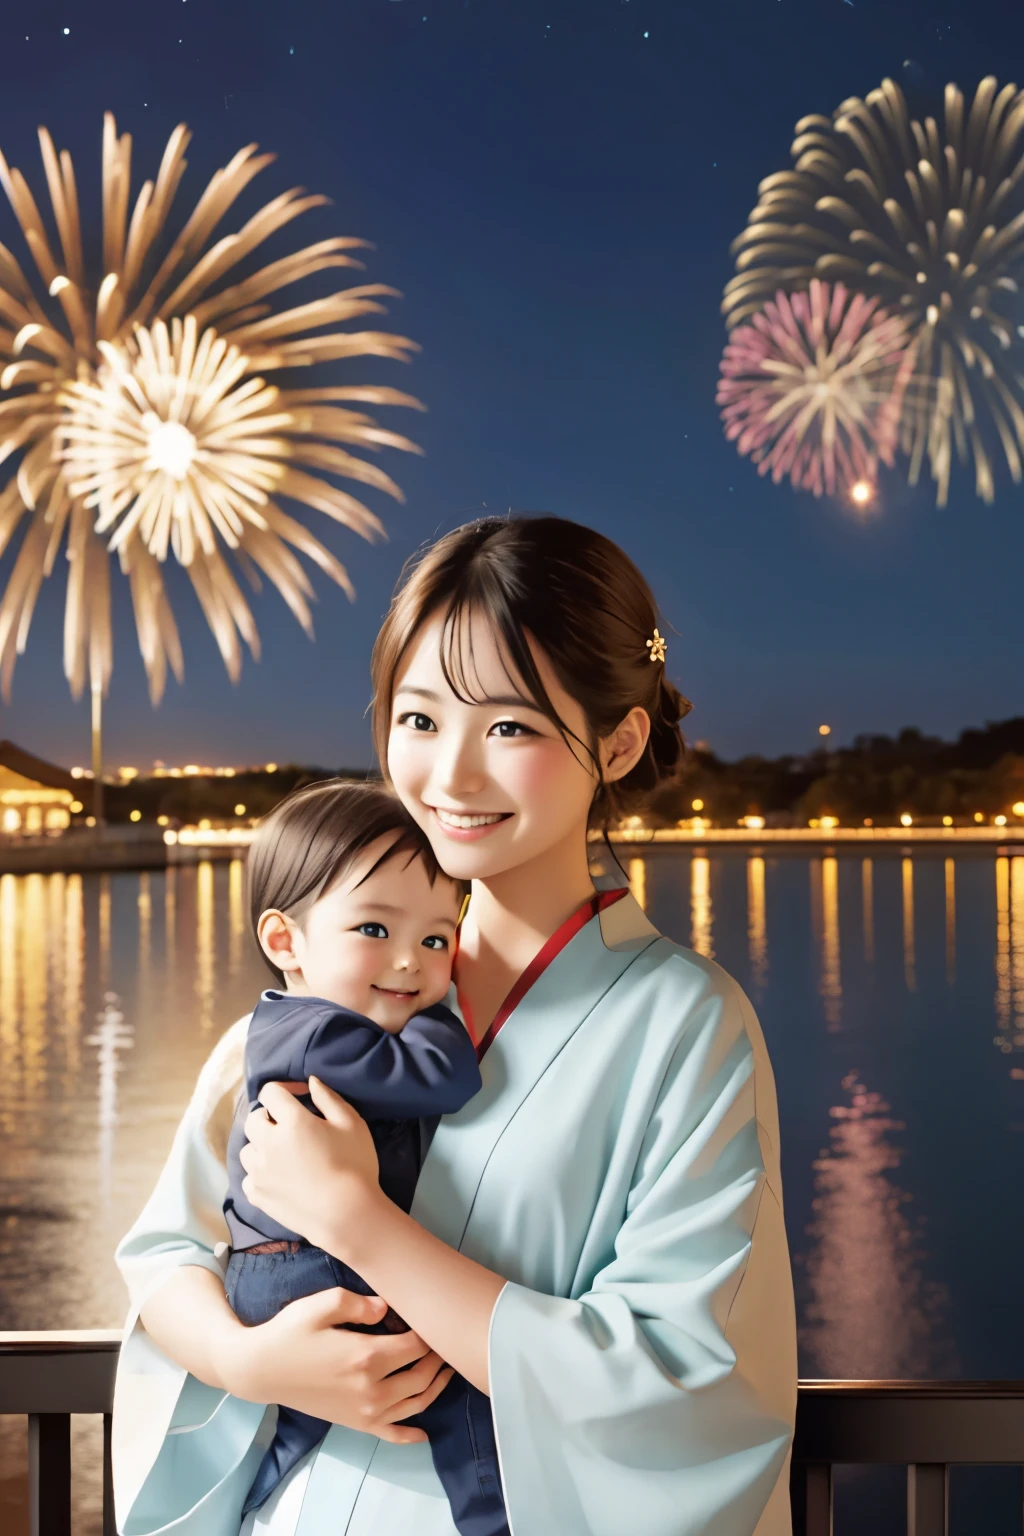 Мать держит ее во время фейерверка, чтобы было легче увидеть фейерверк., Традиционный японский концепт-арт, [ фейерверк в небе ]!!